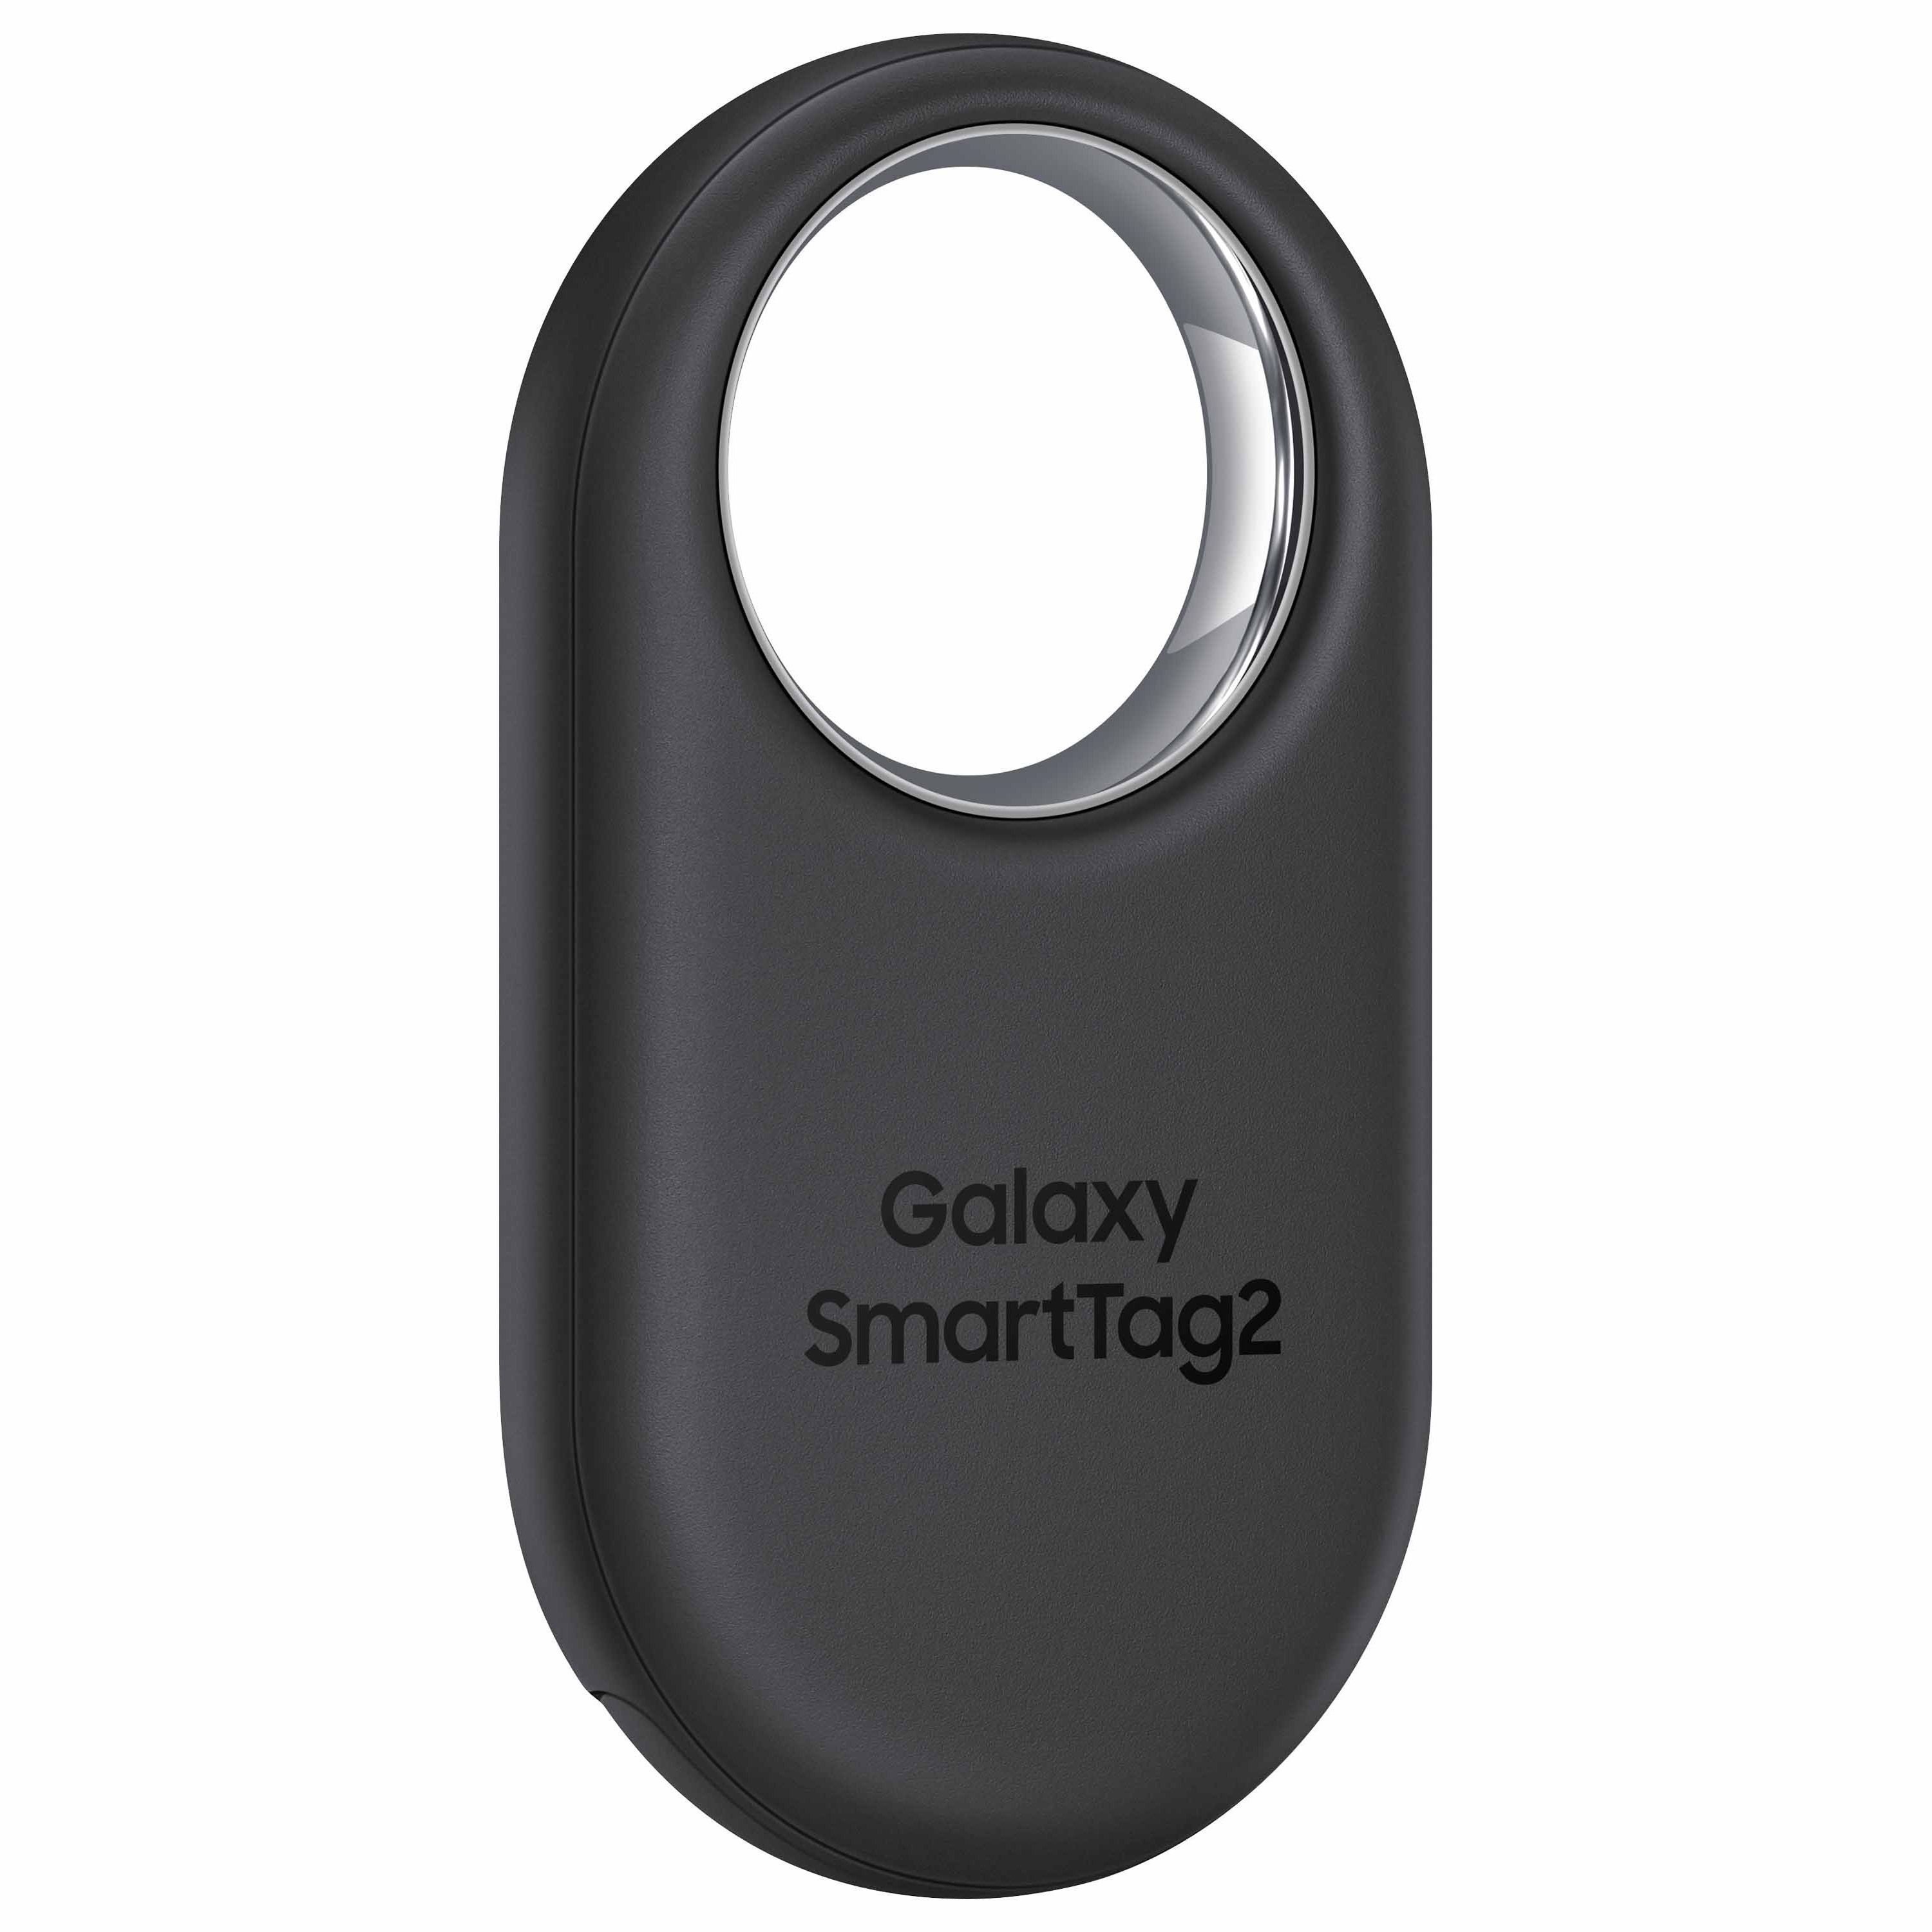 The Samsung Galaxy SmartTag2